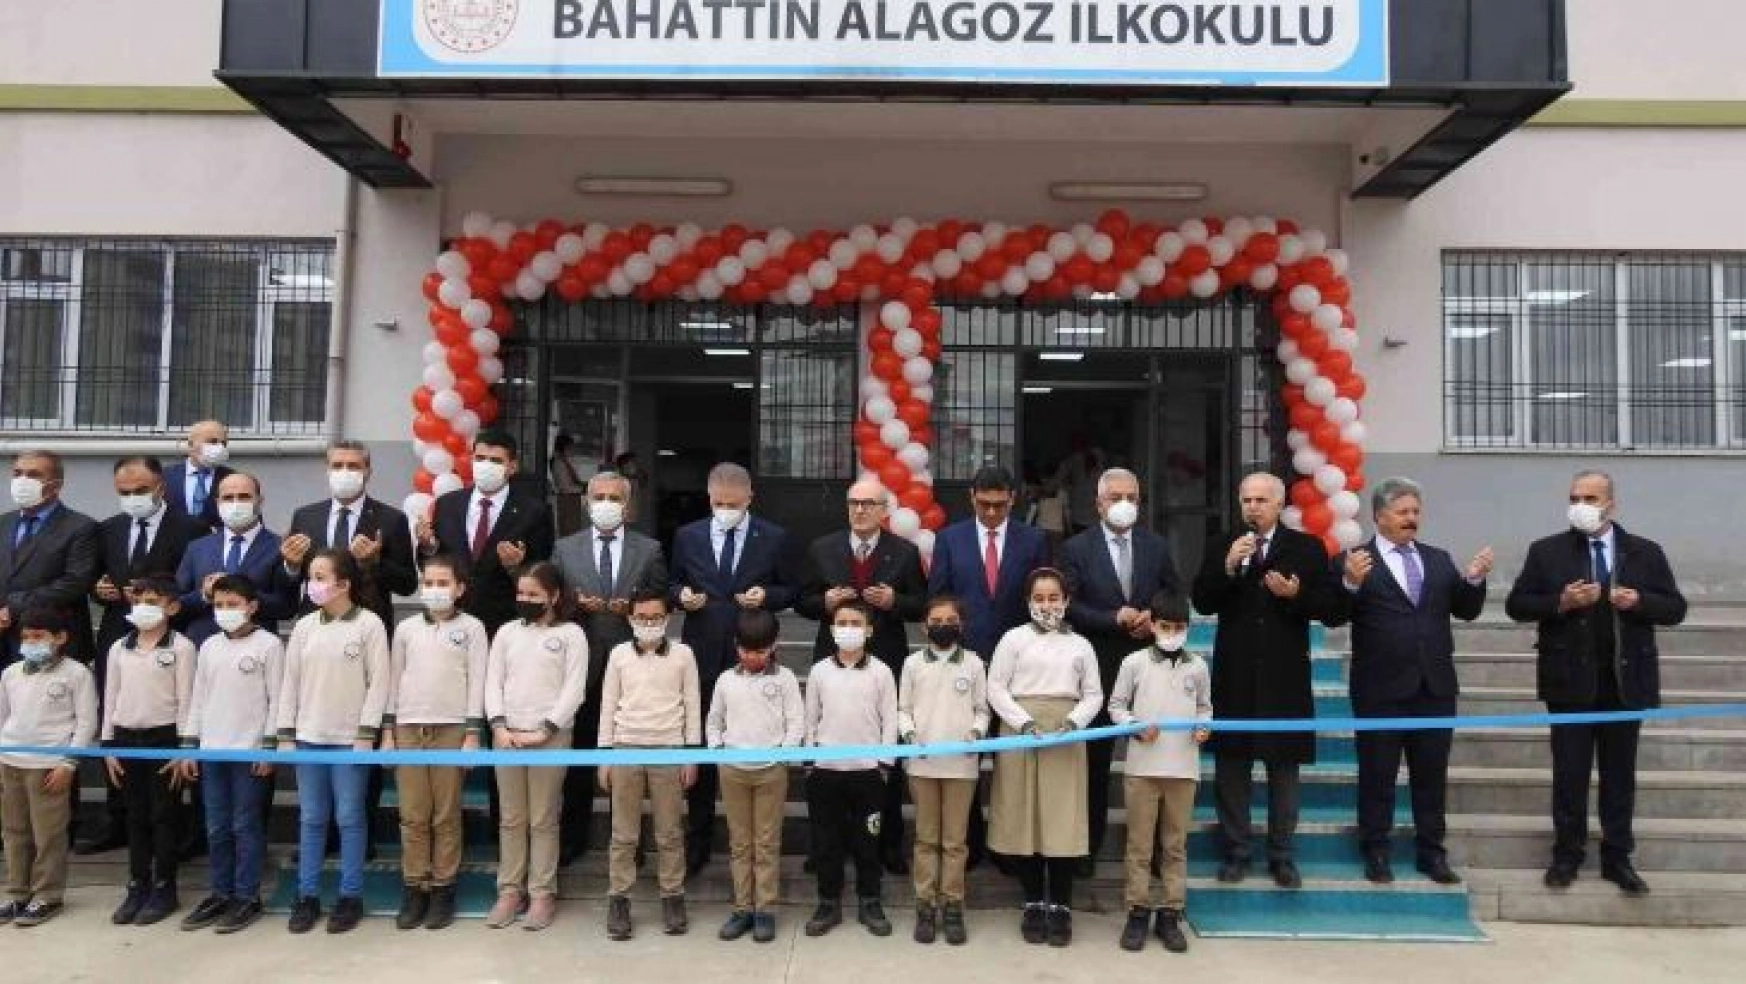 Eski Devlet Bakanı Alagöz'ün adının verildiği okul törenle açıldı